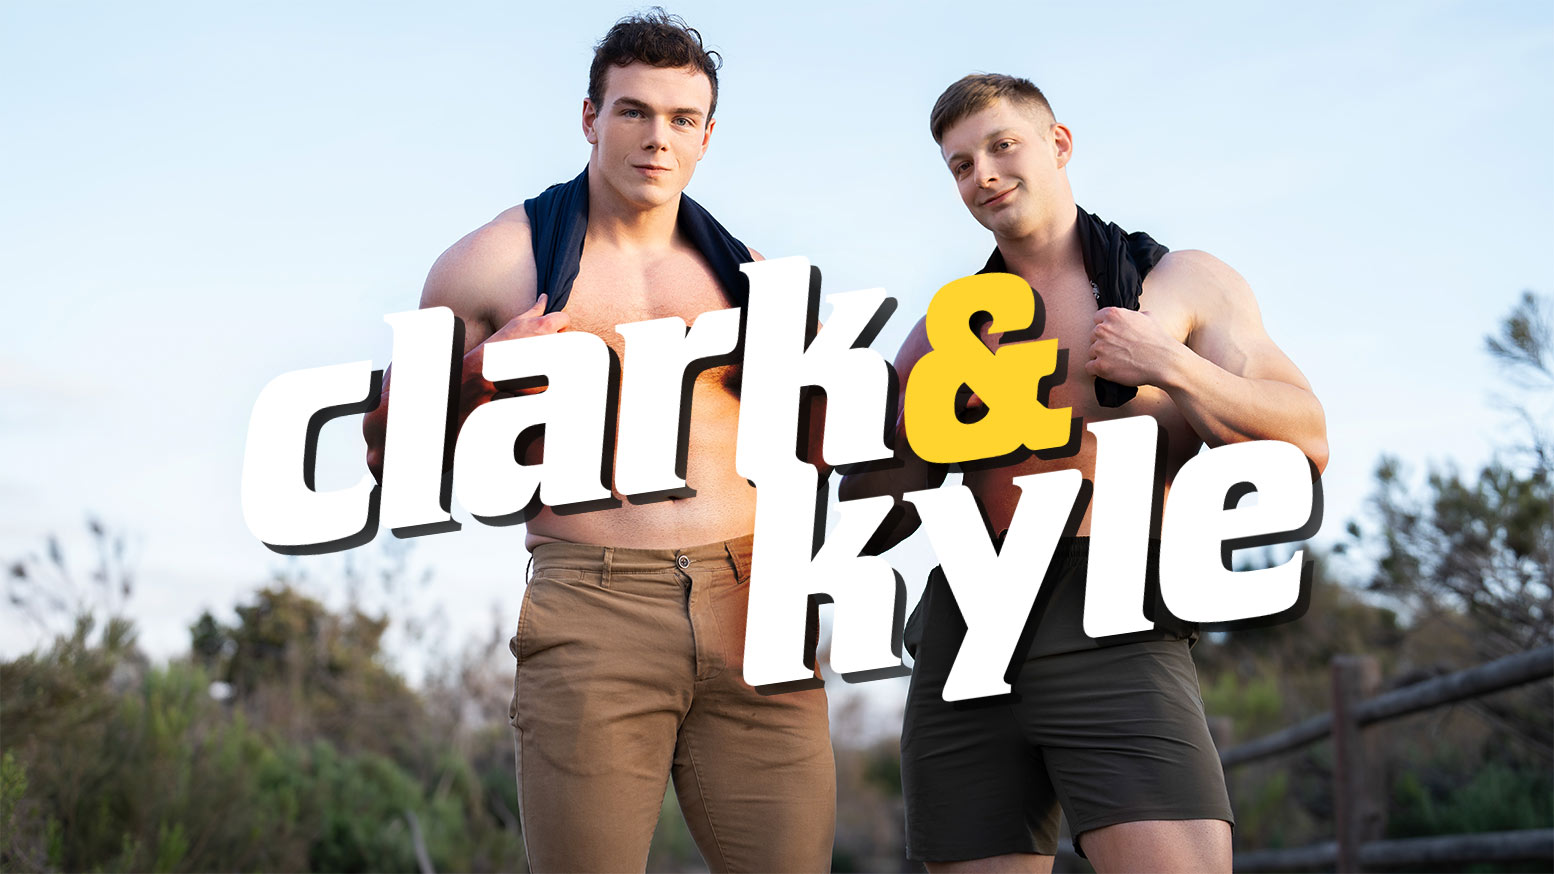 Clark & Kyle